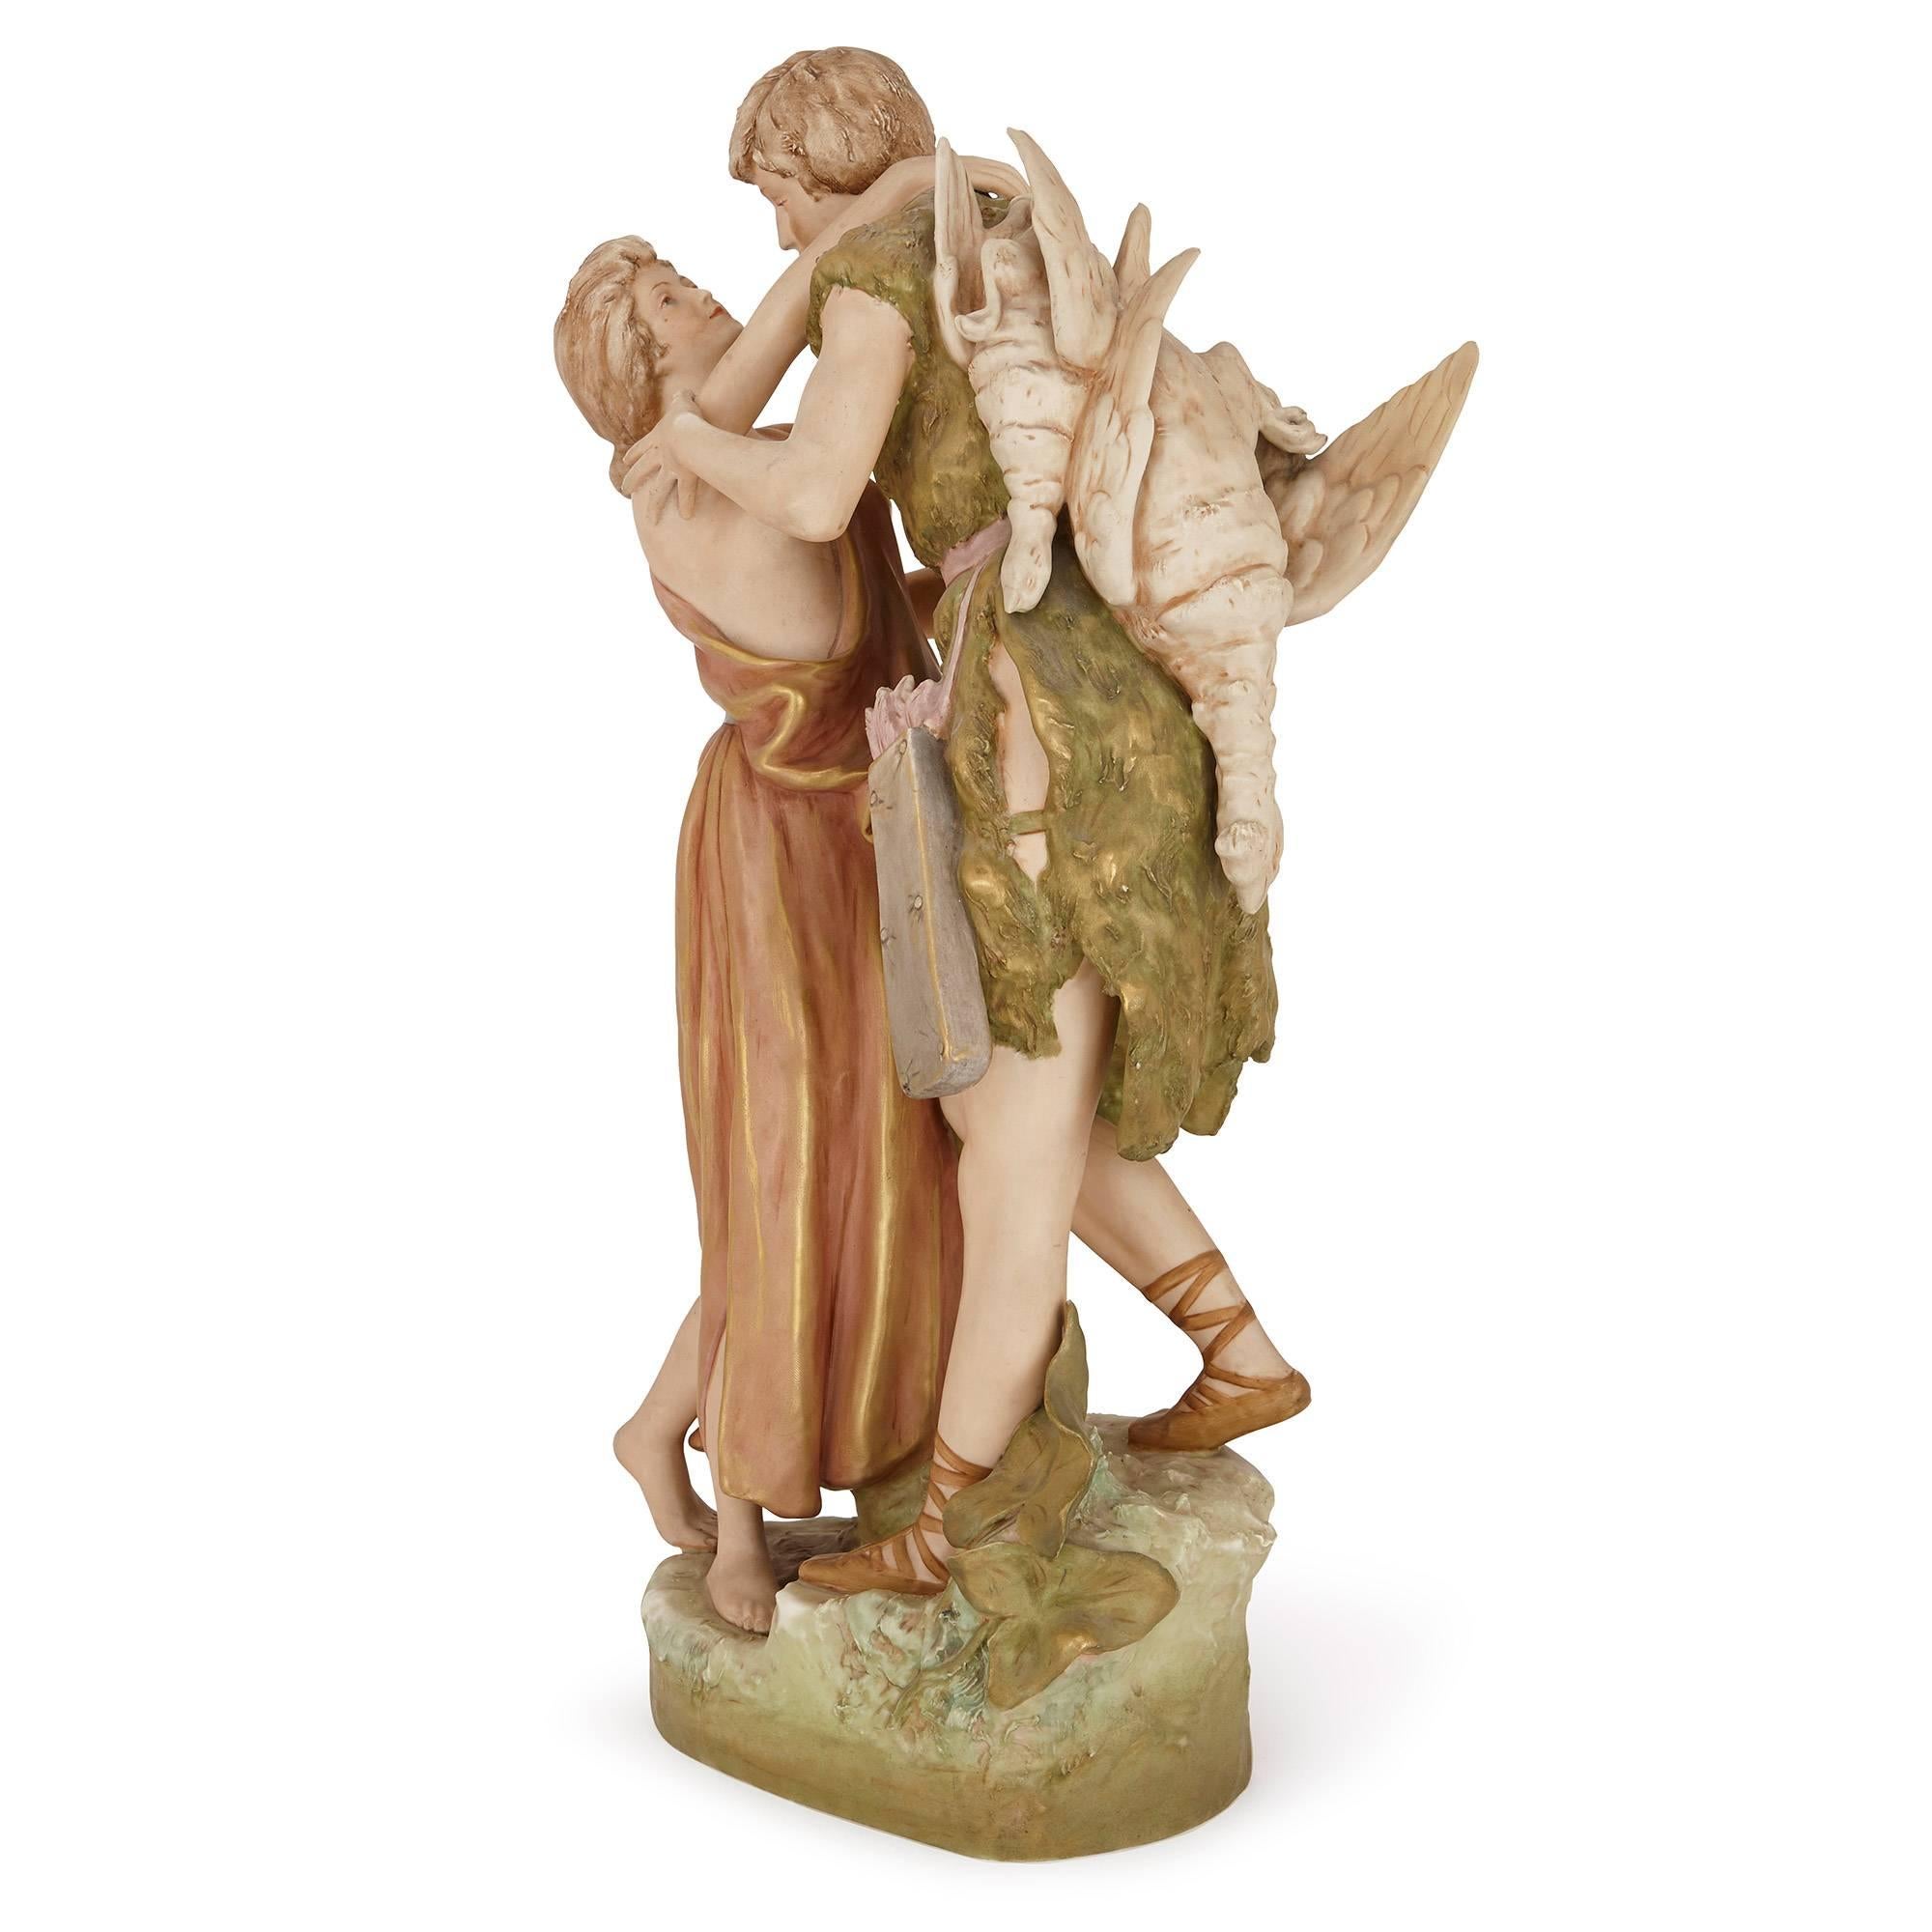 Diese zarte Figurengruppe aus Porzellan zeigt zwei Liebende in einer zärtlichen Umarmung. Das Mädchen ist blond und trägt ein Kleid, das ihr von der Brust gefallen ist, und der Jäger hat zwei Vögel, die Beute seiner Jagd, auf dem Rücken und einen